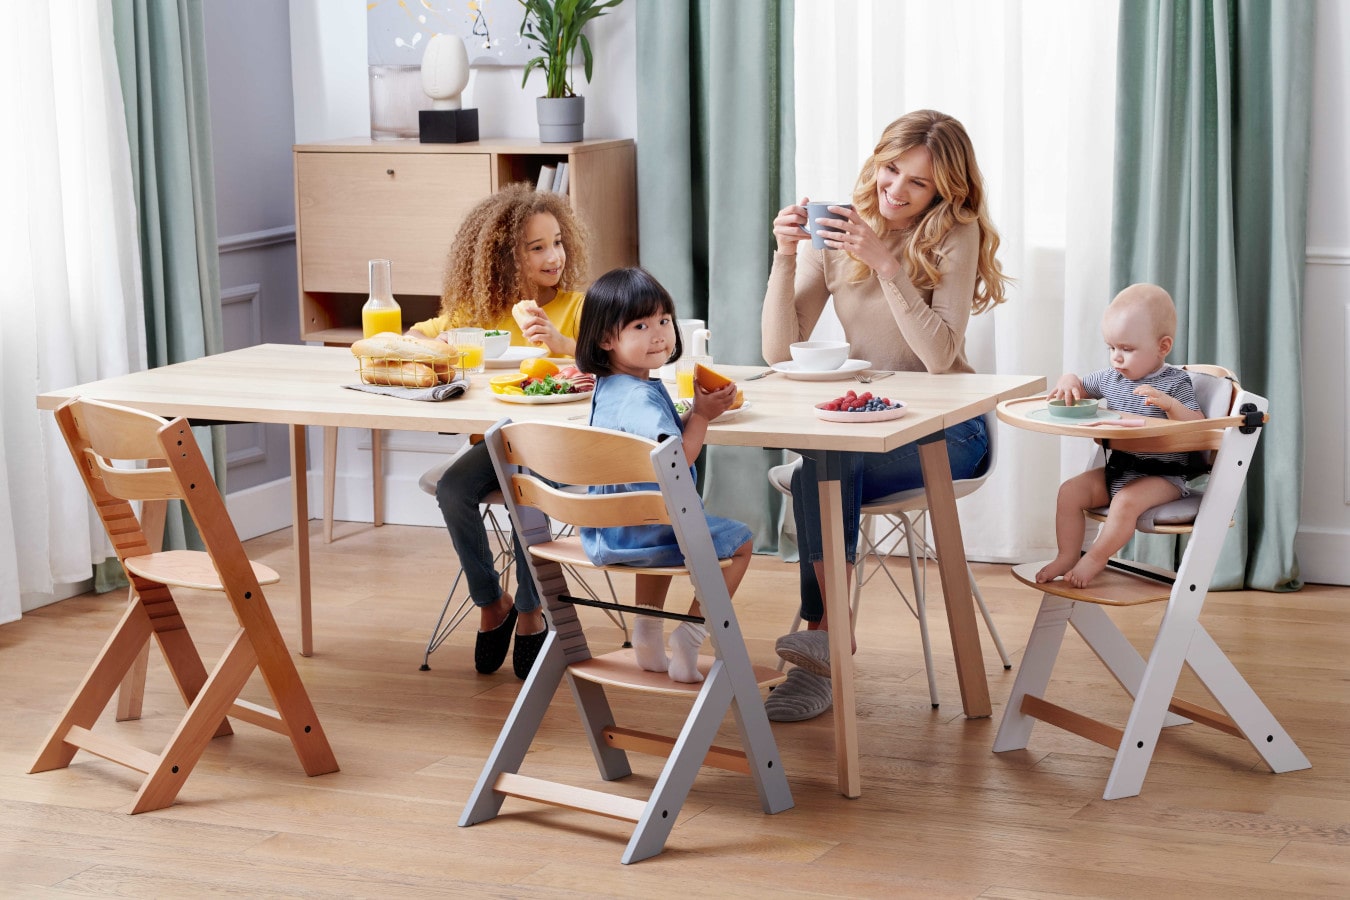 Mutter und drei Kinder sitzen am Tisch, die Mutter trinkt Kaffee, die Kinder freuen sich. Der ENOCK-Kinderhochstuhl ist in 3 Konfigurationen erhältlich - vom Kinderhochstuhl bis zum Stuhl für ältere Kinder.